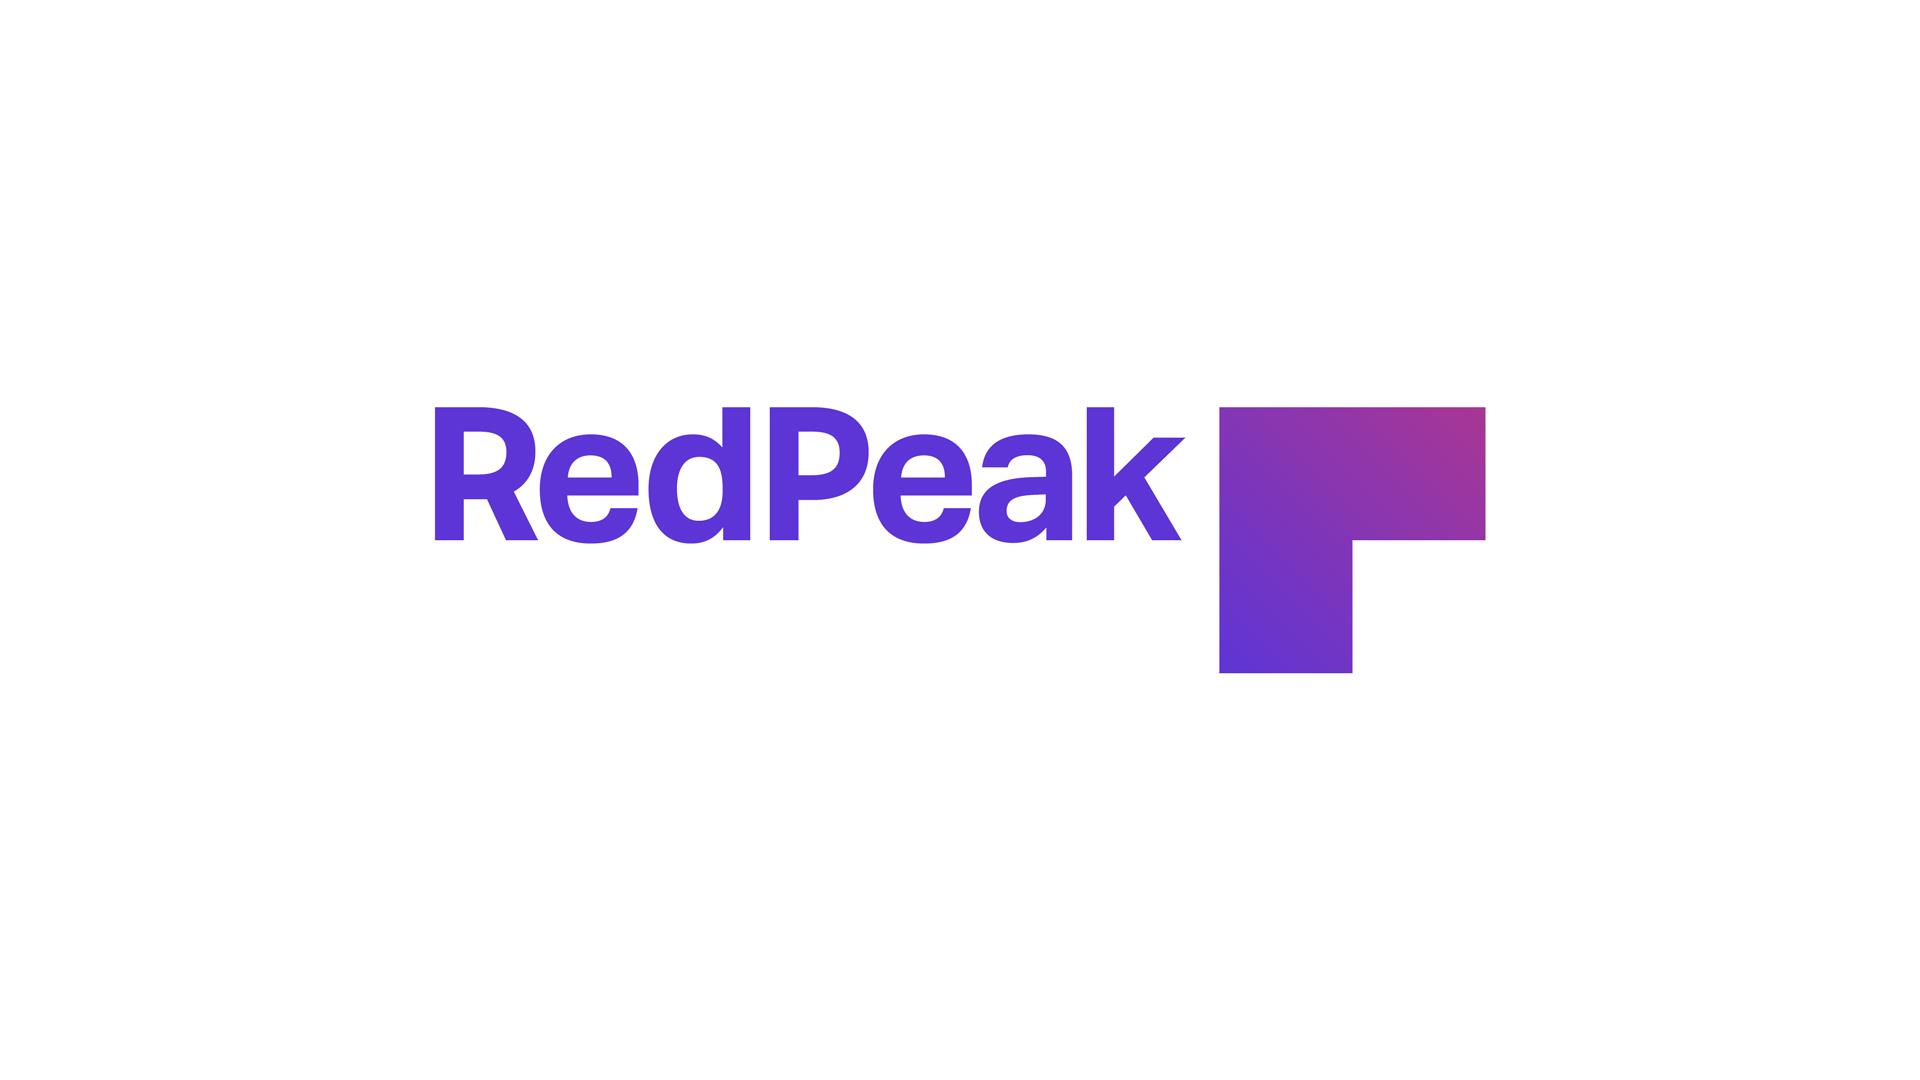 RedPeak